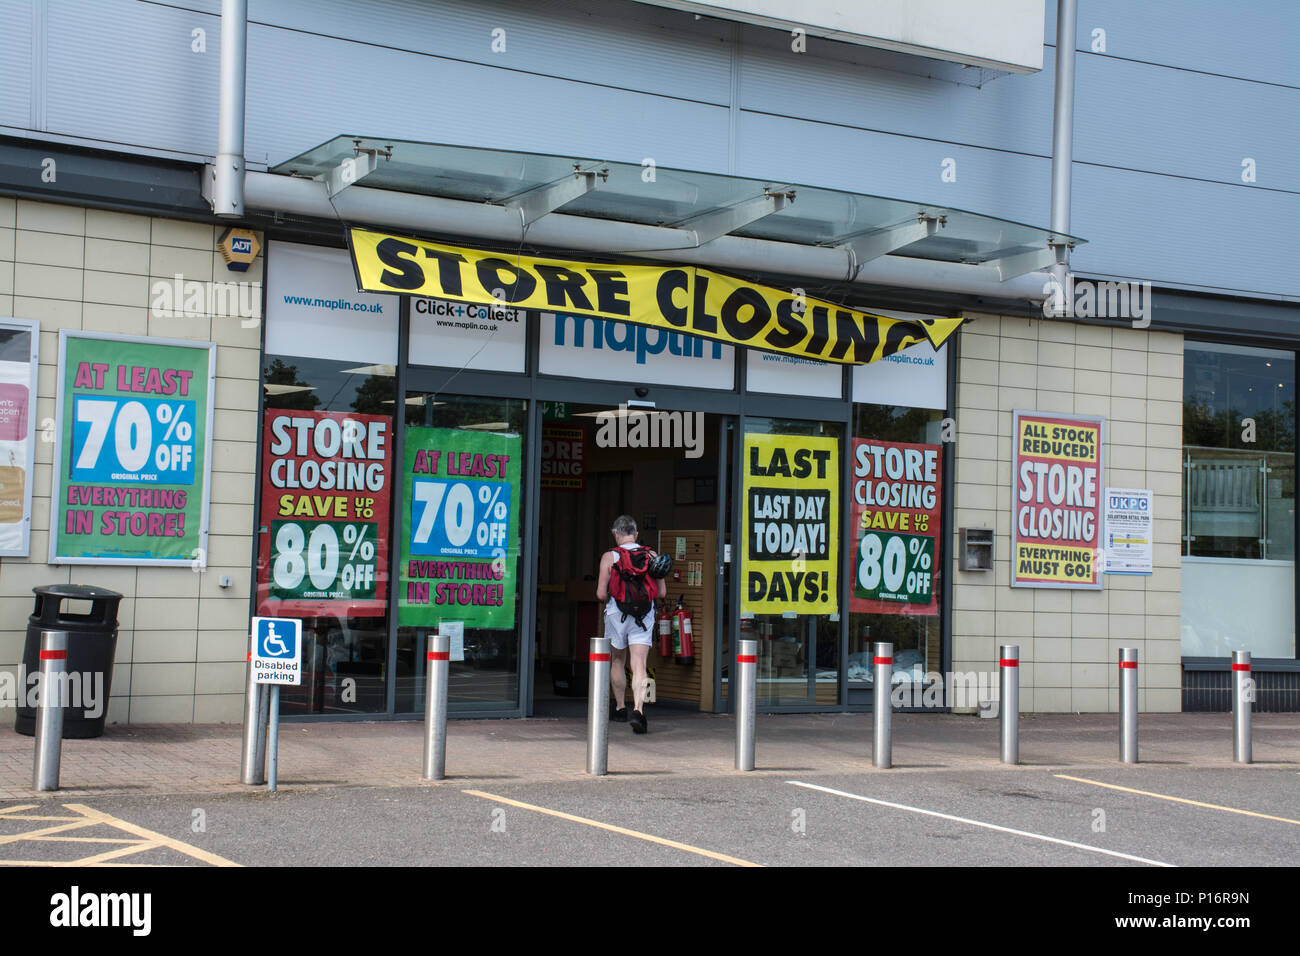 Farnborough, Hampshire, Großbritannien. Juni 2018. Heute ist der letzte Handelstag für den Elektronikhändler Maplins in der Stadt. Der Laden ist einer von vielen Einzelhändlern, die in den letzten Monaten stark von den Veränderungen der Einkaufsgewohnheiten betroffen sind. Stockfoto